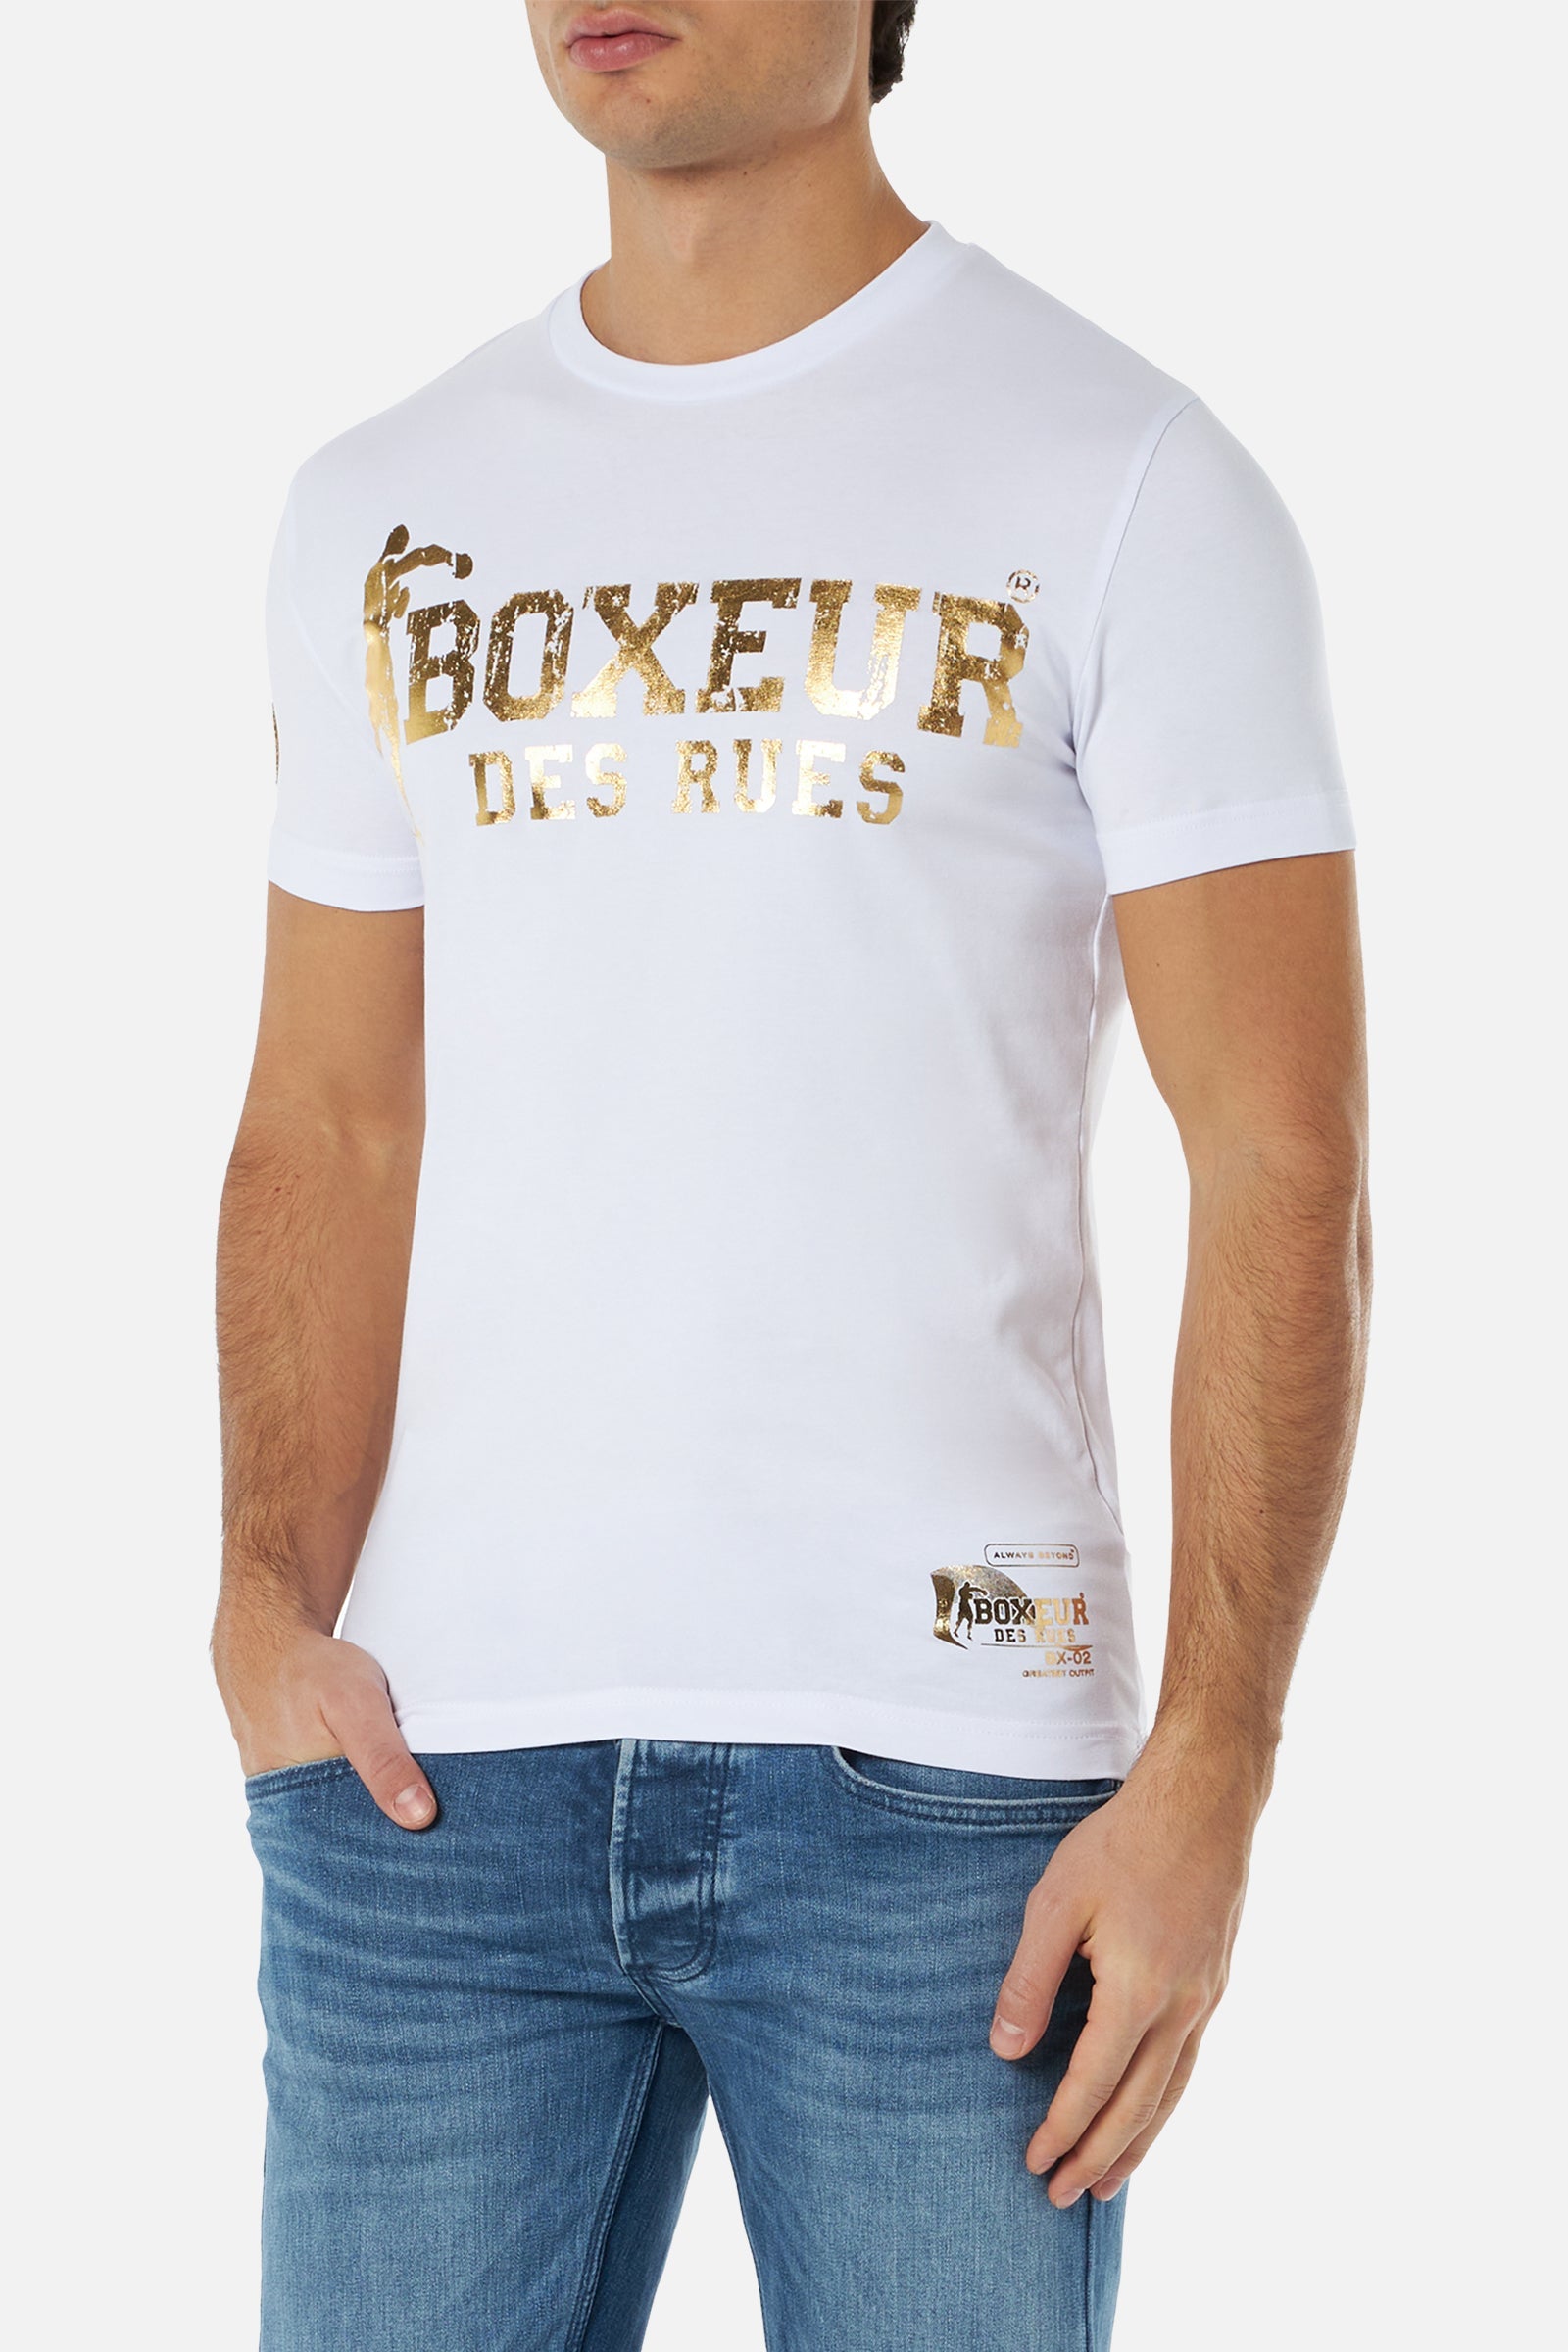 T-Shirt Boxeur Street 2 in White-Gold T-Shirts Boxeur des Rues   